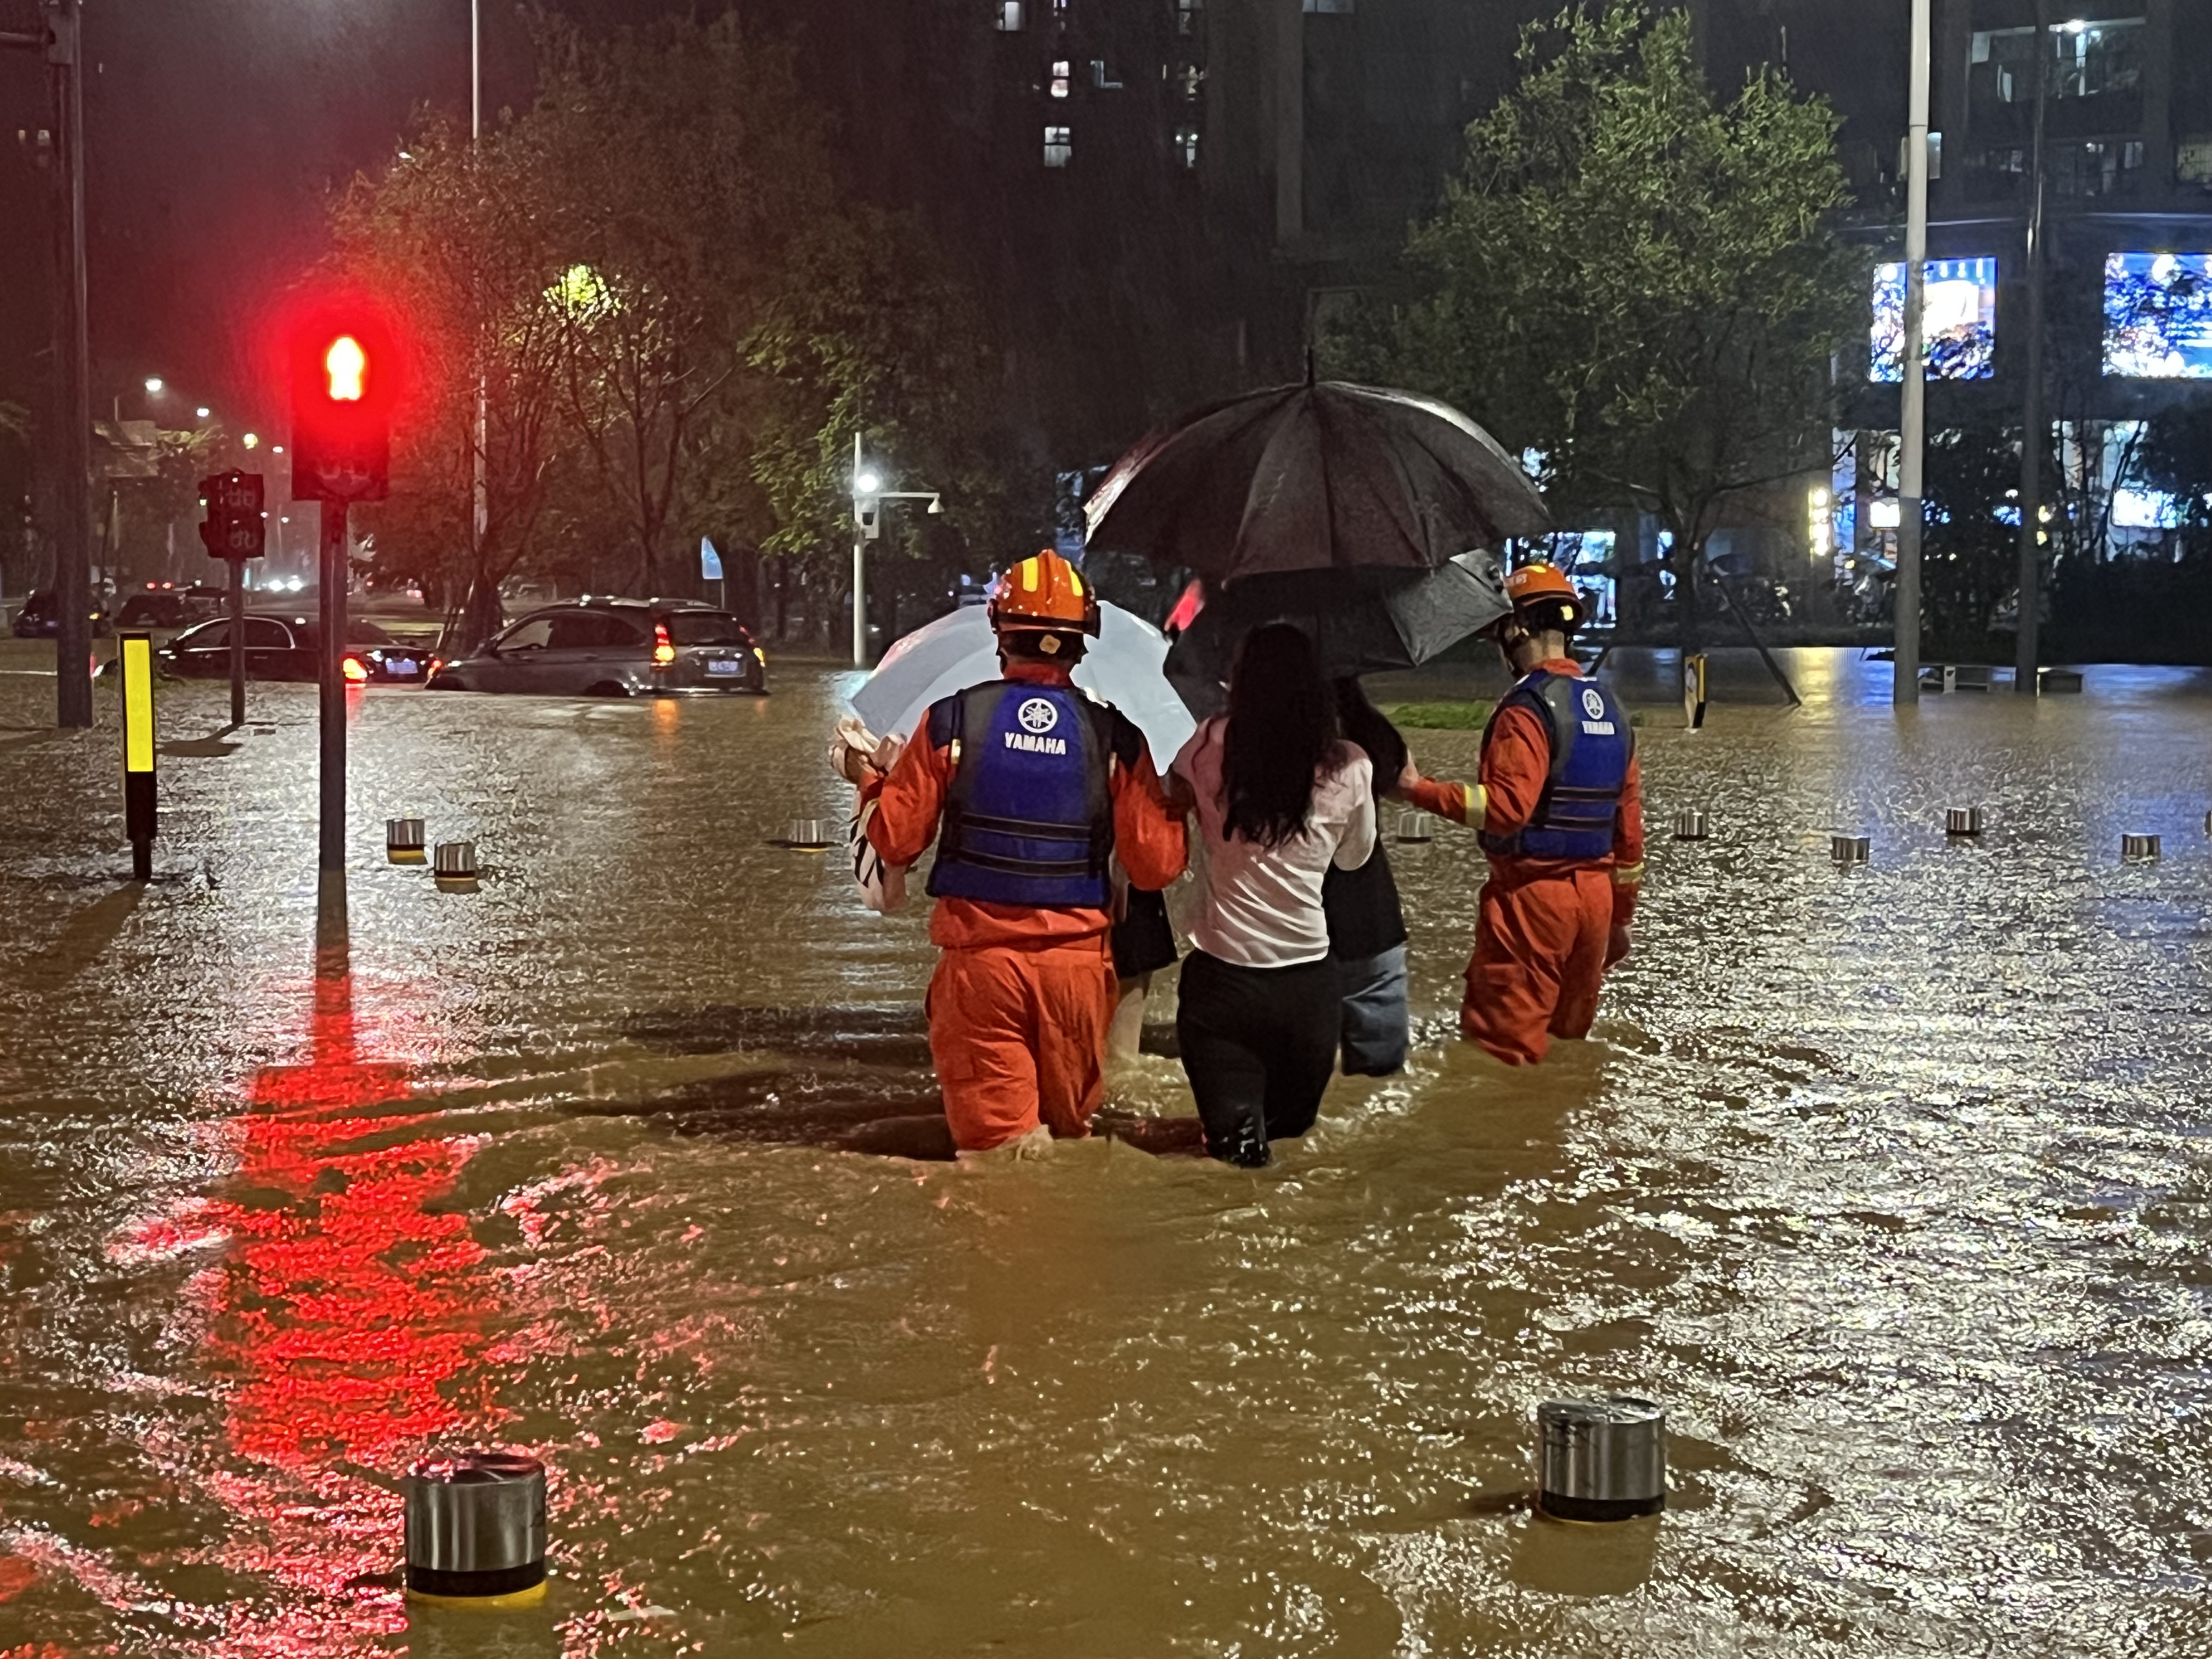 深圳消防出动多支救援力量连夜转移受灾群众